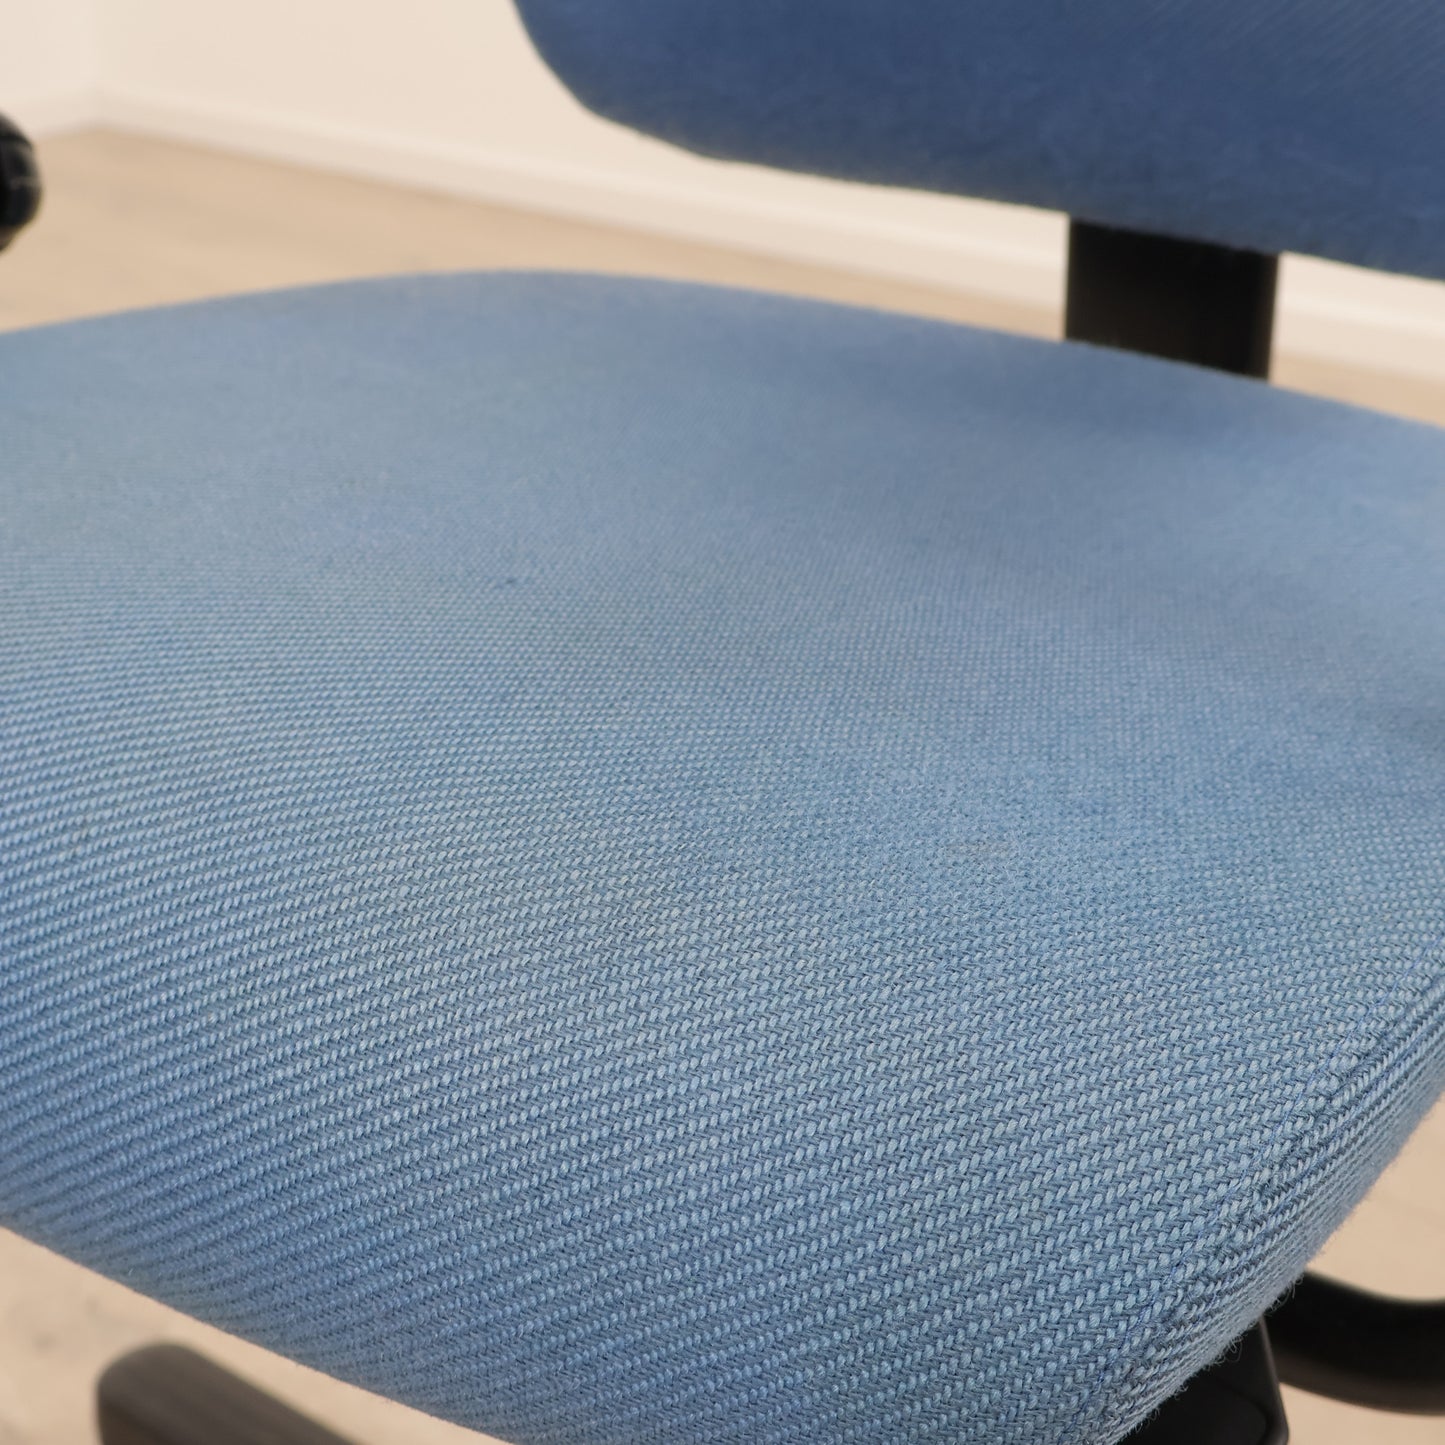 Nyrenset | SAVO kontorstol i blått trekk